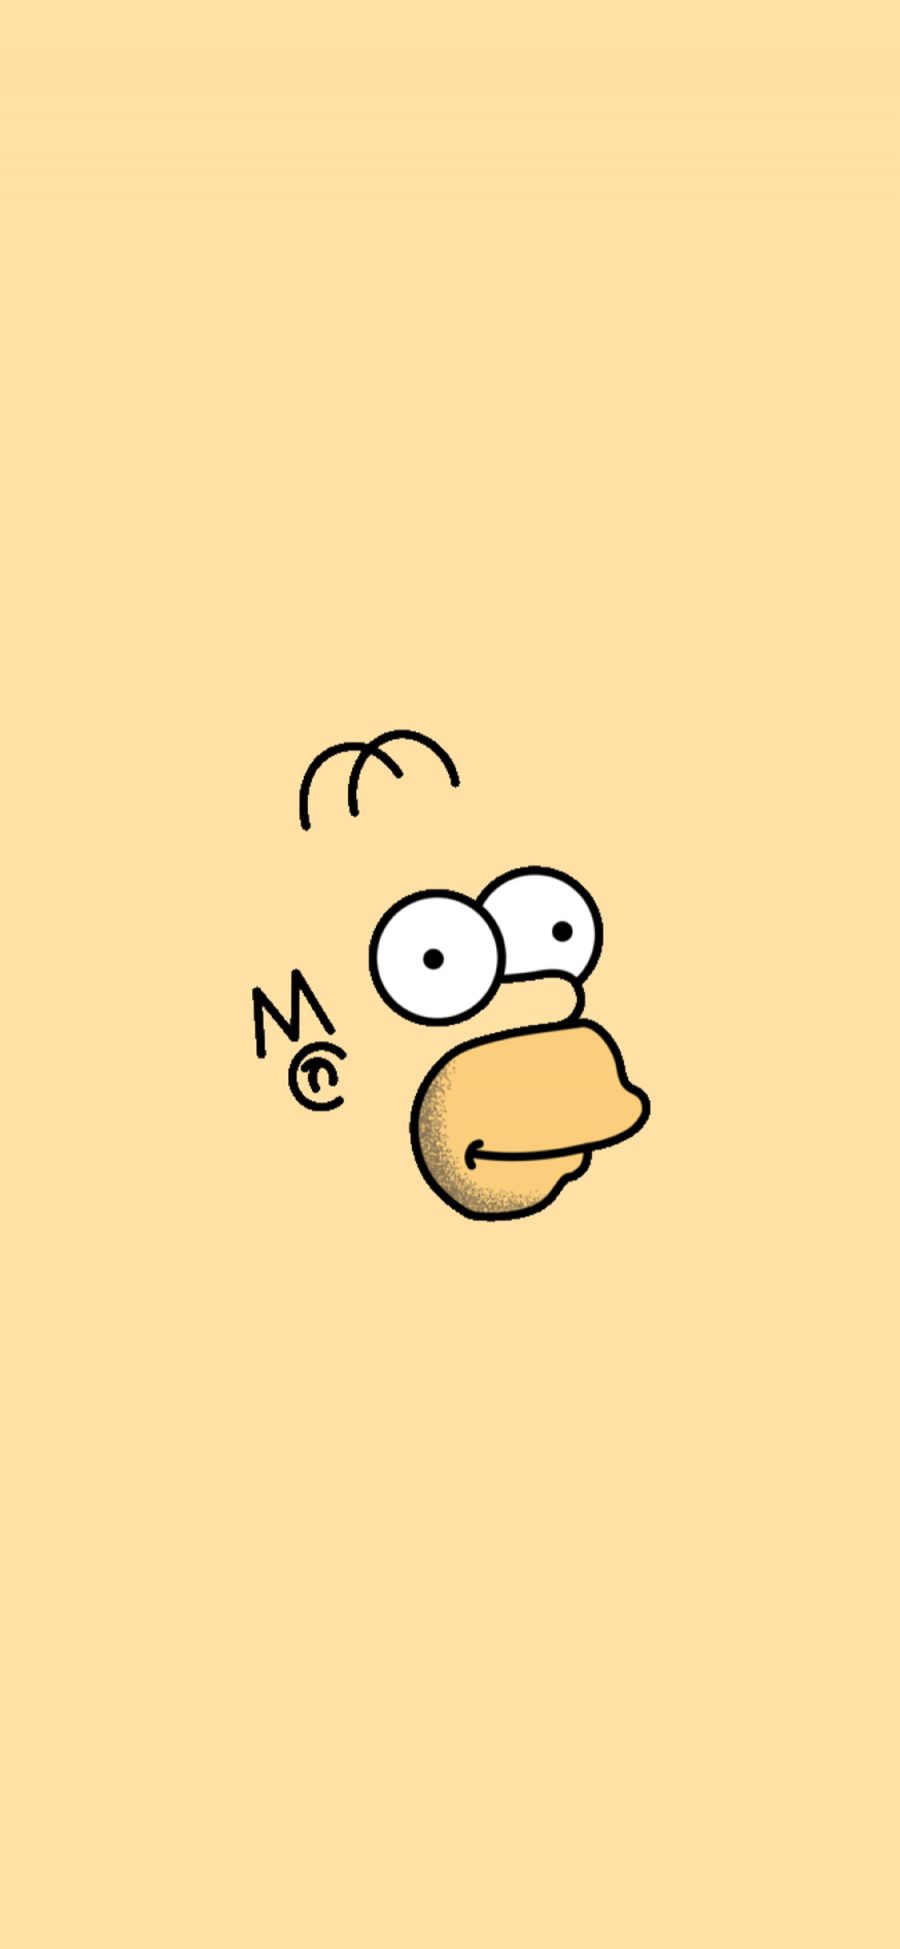 [2436×1125]辛普森 美国 动画 黄色 卡通 苹果手机动漫壁纸图片